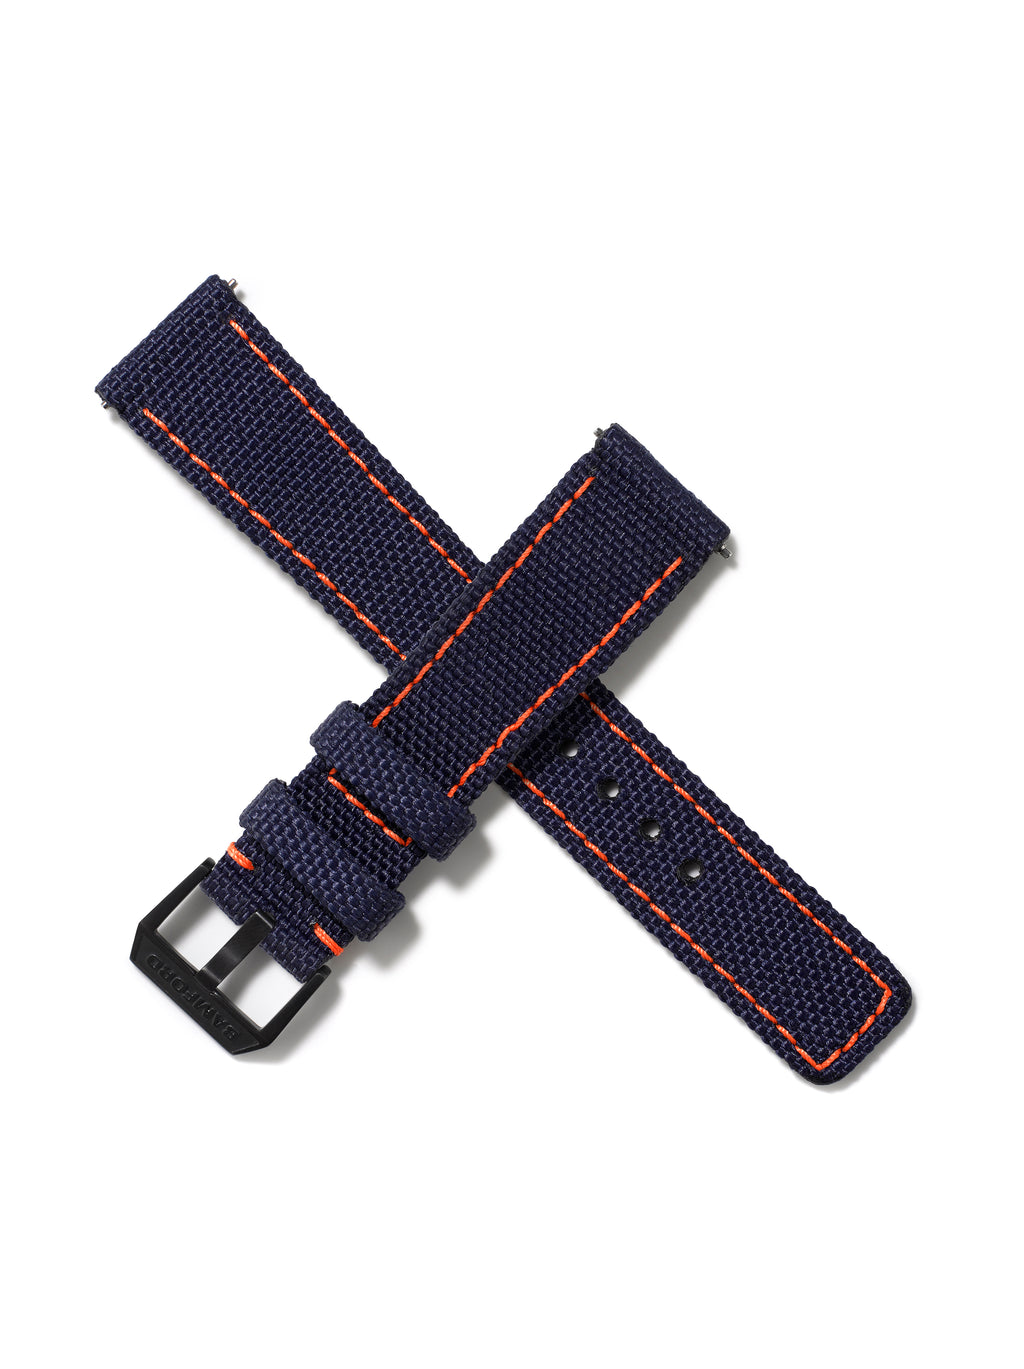 20mm Cordura Strap - Navy with Orange Stitch